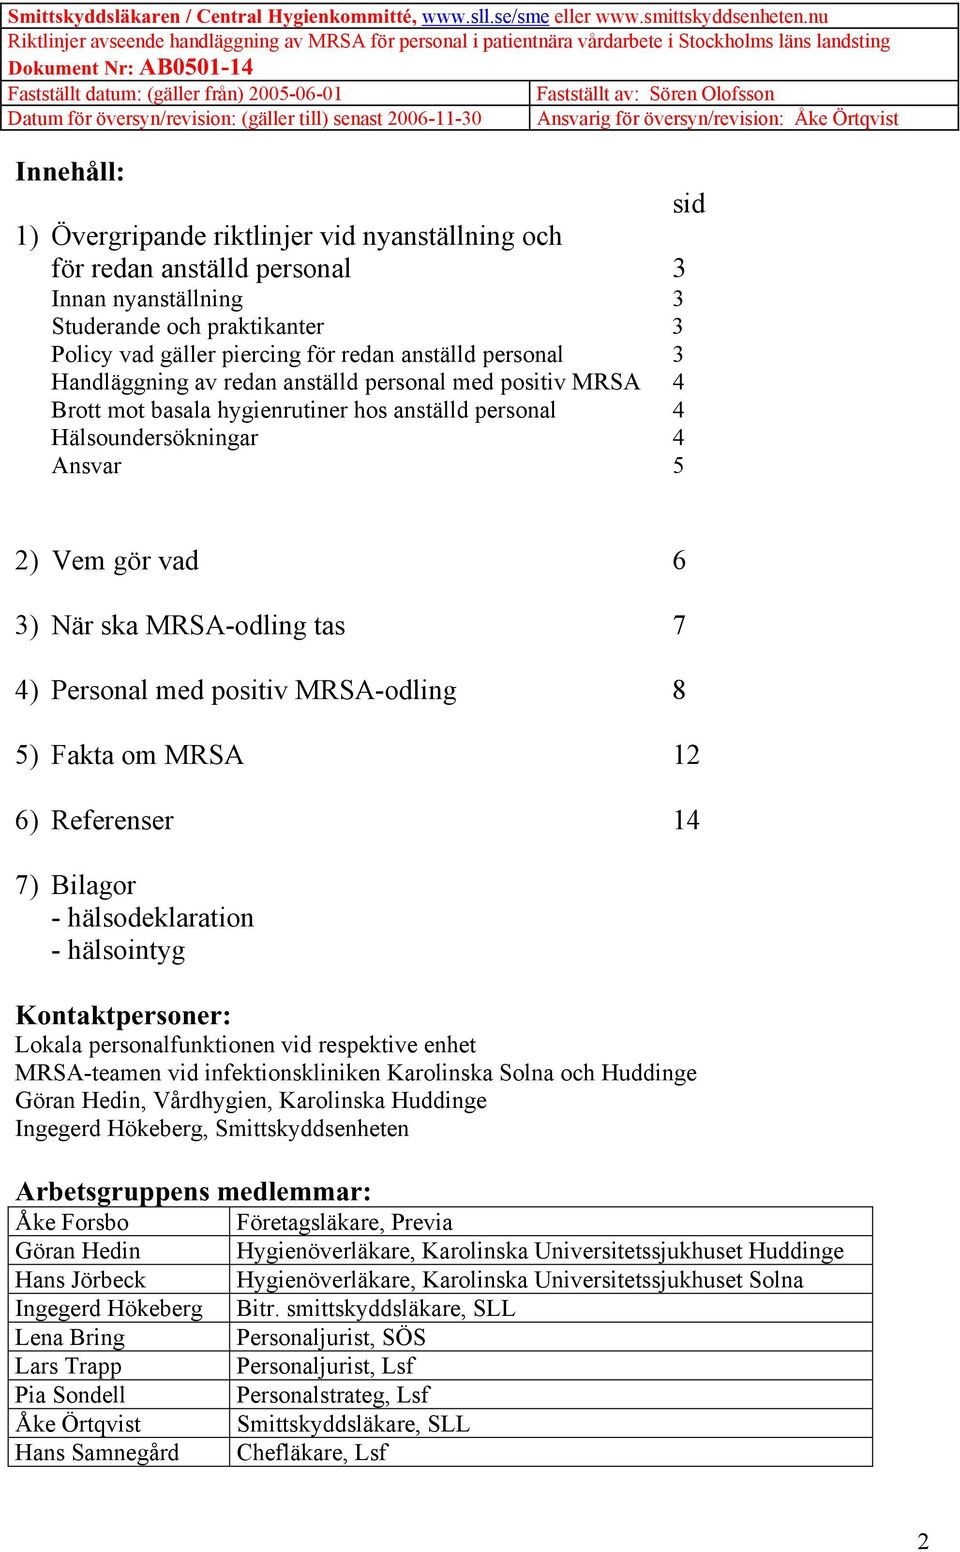 Personal med positiv MRSA-odling 8 5) Fakta om MRSA 12 6) Referenser 14 7) Bilagor - hälsodeklaration - hälsointyg Kontaktpersoner: Lokala personalfunktionen vid respektive enhet MRSA-teamen vid